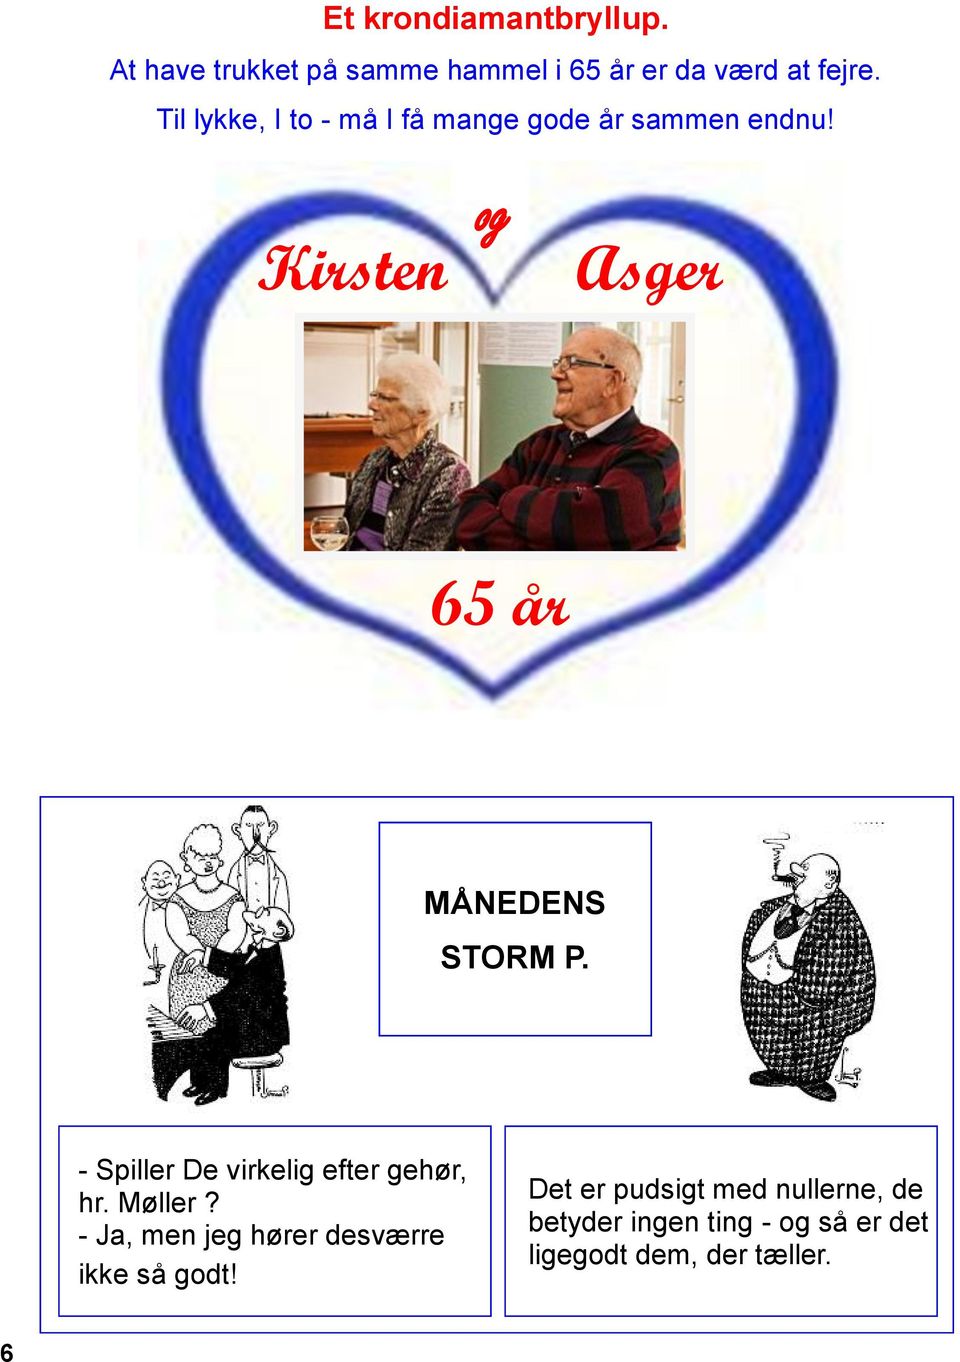 Kirsten og Asger 65 år MÅNEDENS STORM P. - Spiller De virkelig efter gehør, hr. Møller?